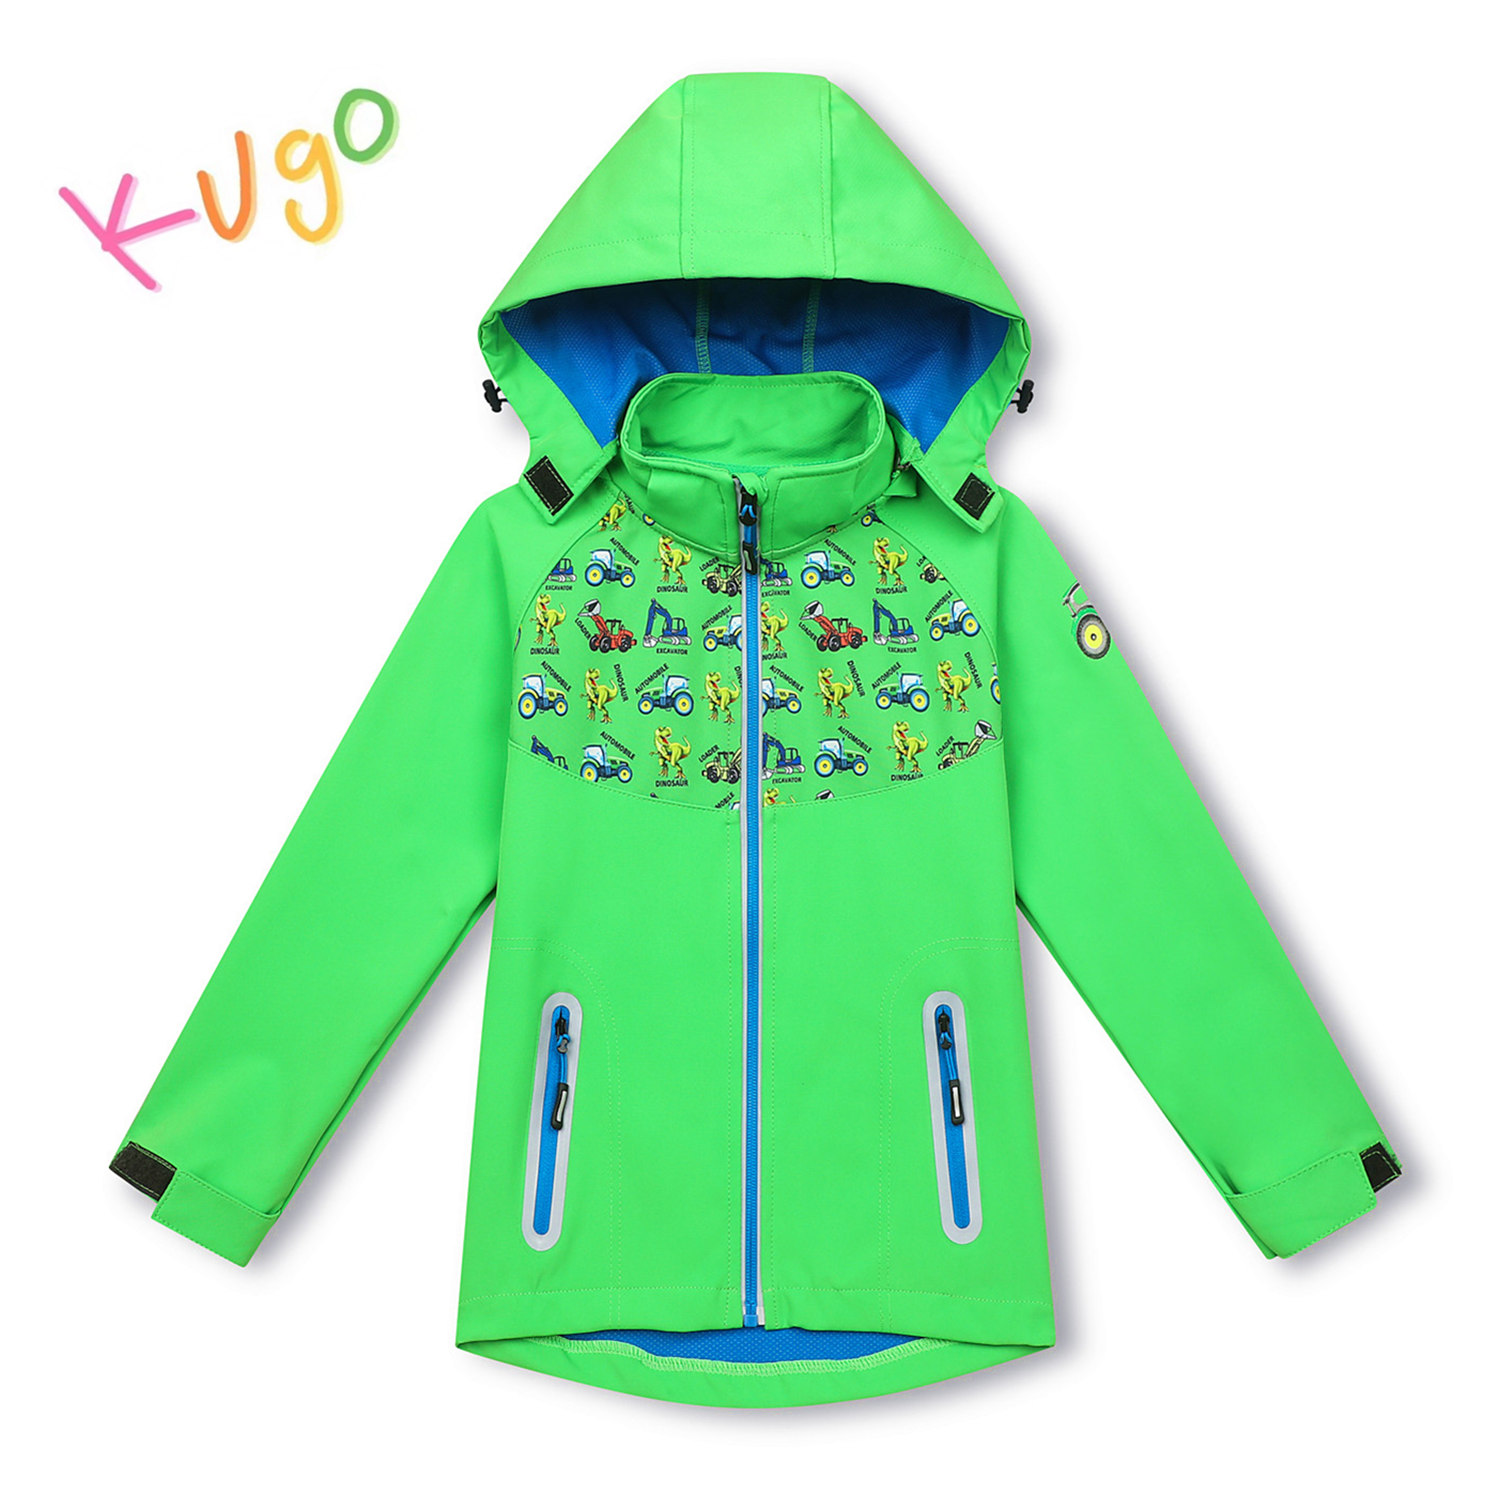 Chlapecká softshellová bunda - KUGO HK3121, zelená Barva: Zelená, Velikost: 86